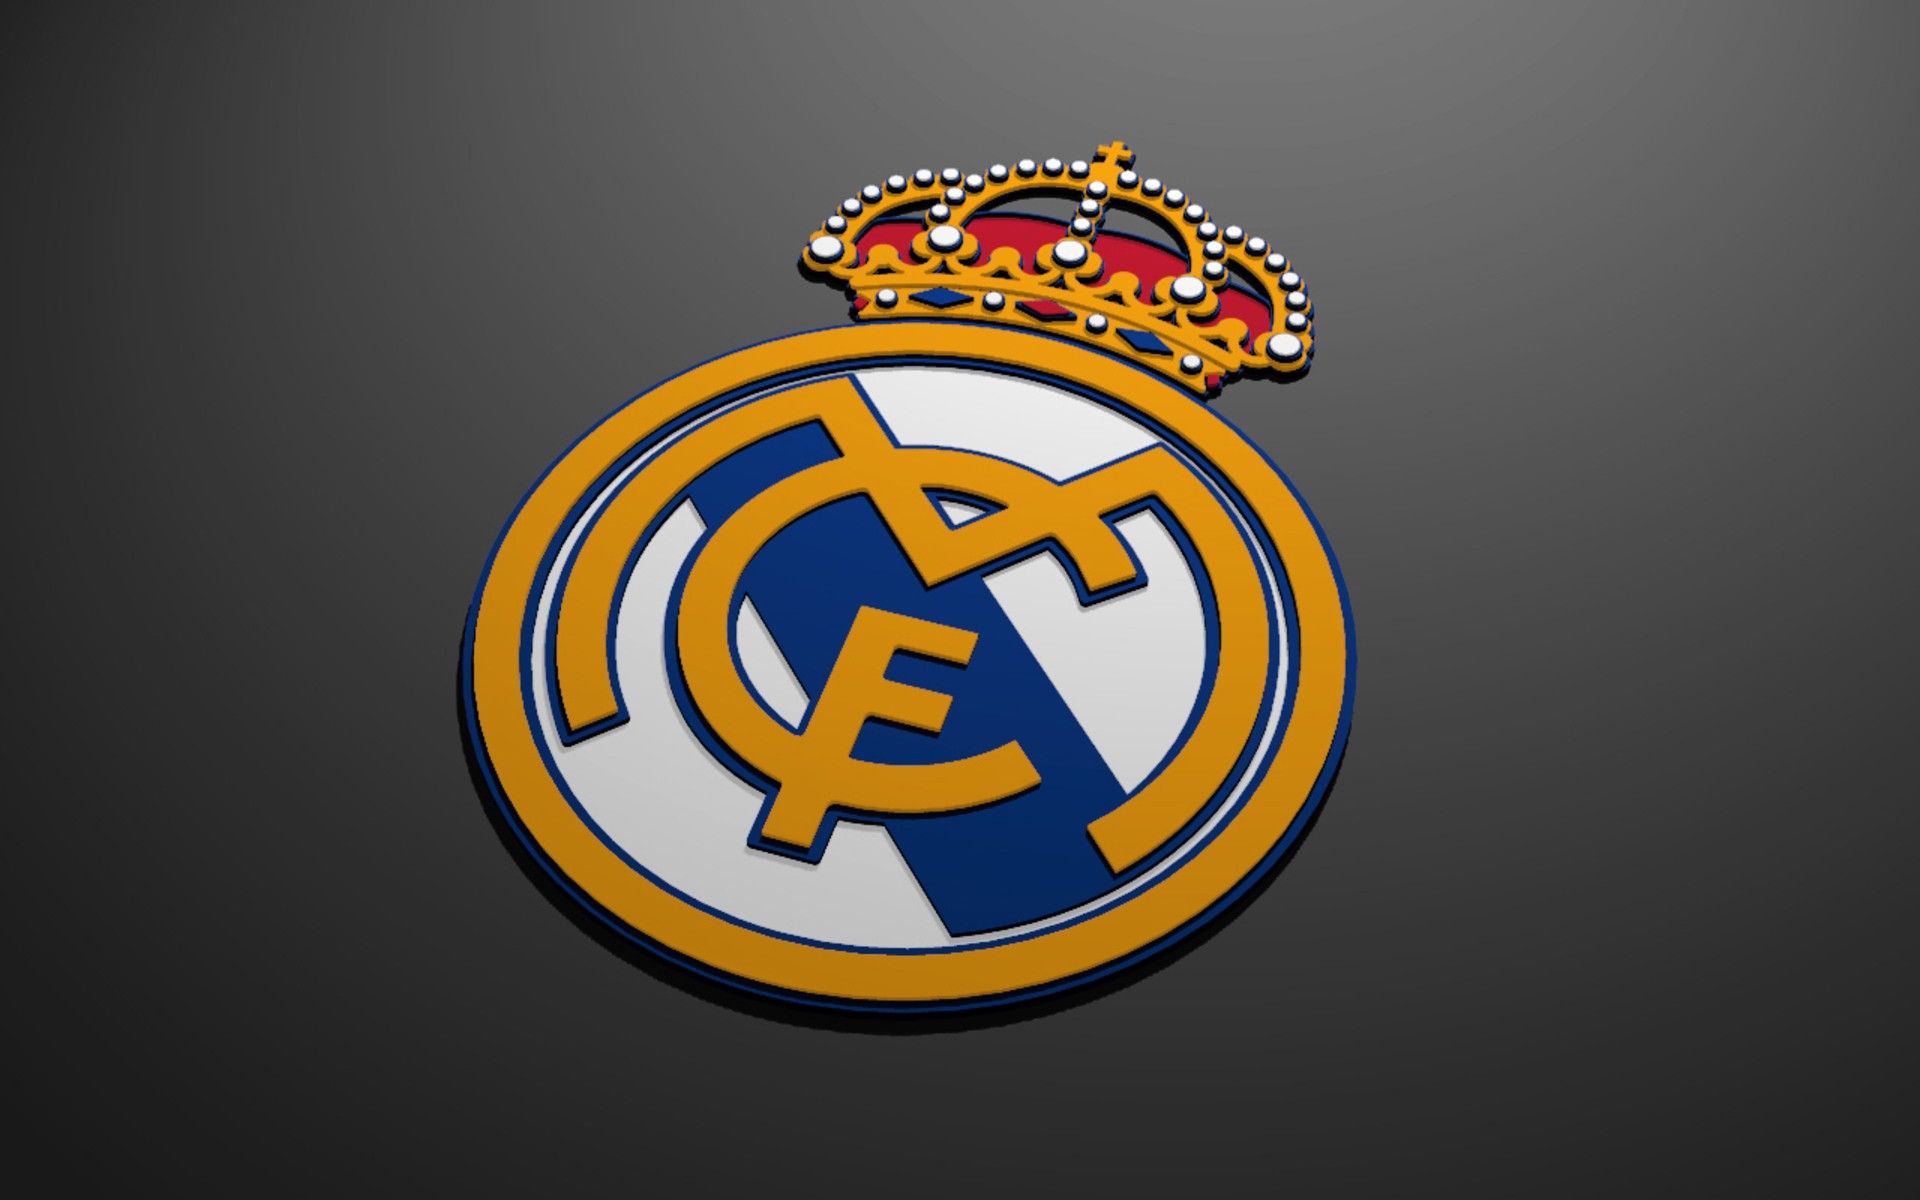 Real Madrid Logo Wallpapers - Top Những Hình Ảnh Đẹp